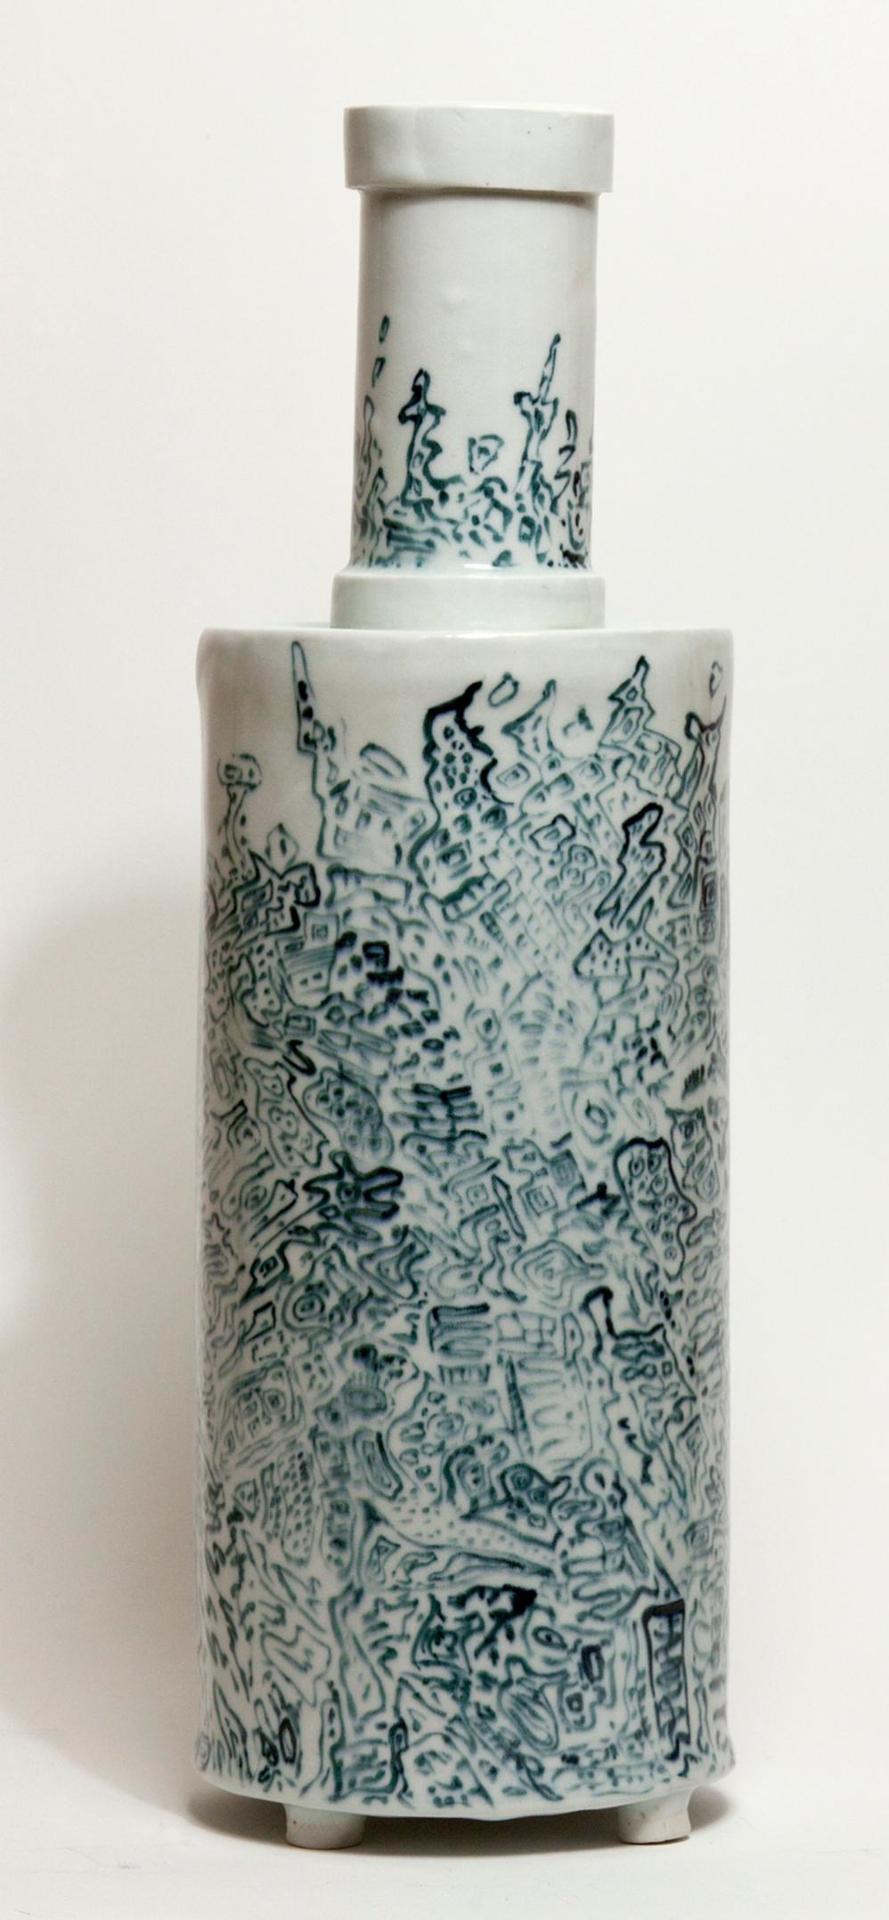 Maria Gakovic (1913-1999) - Untitled - ceramic container